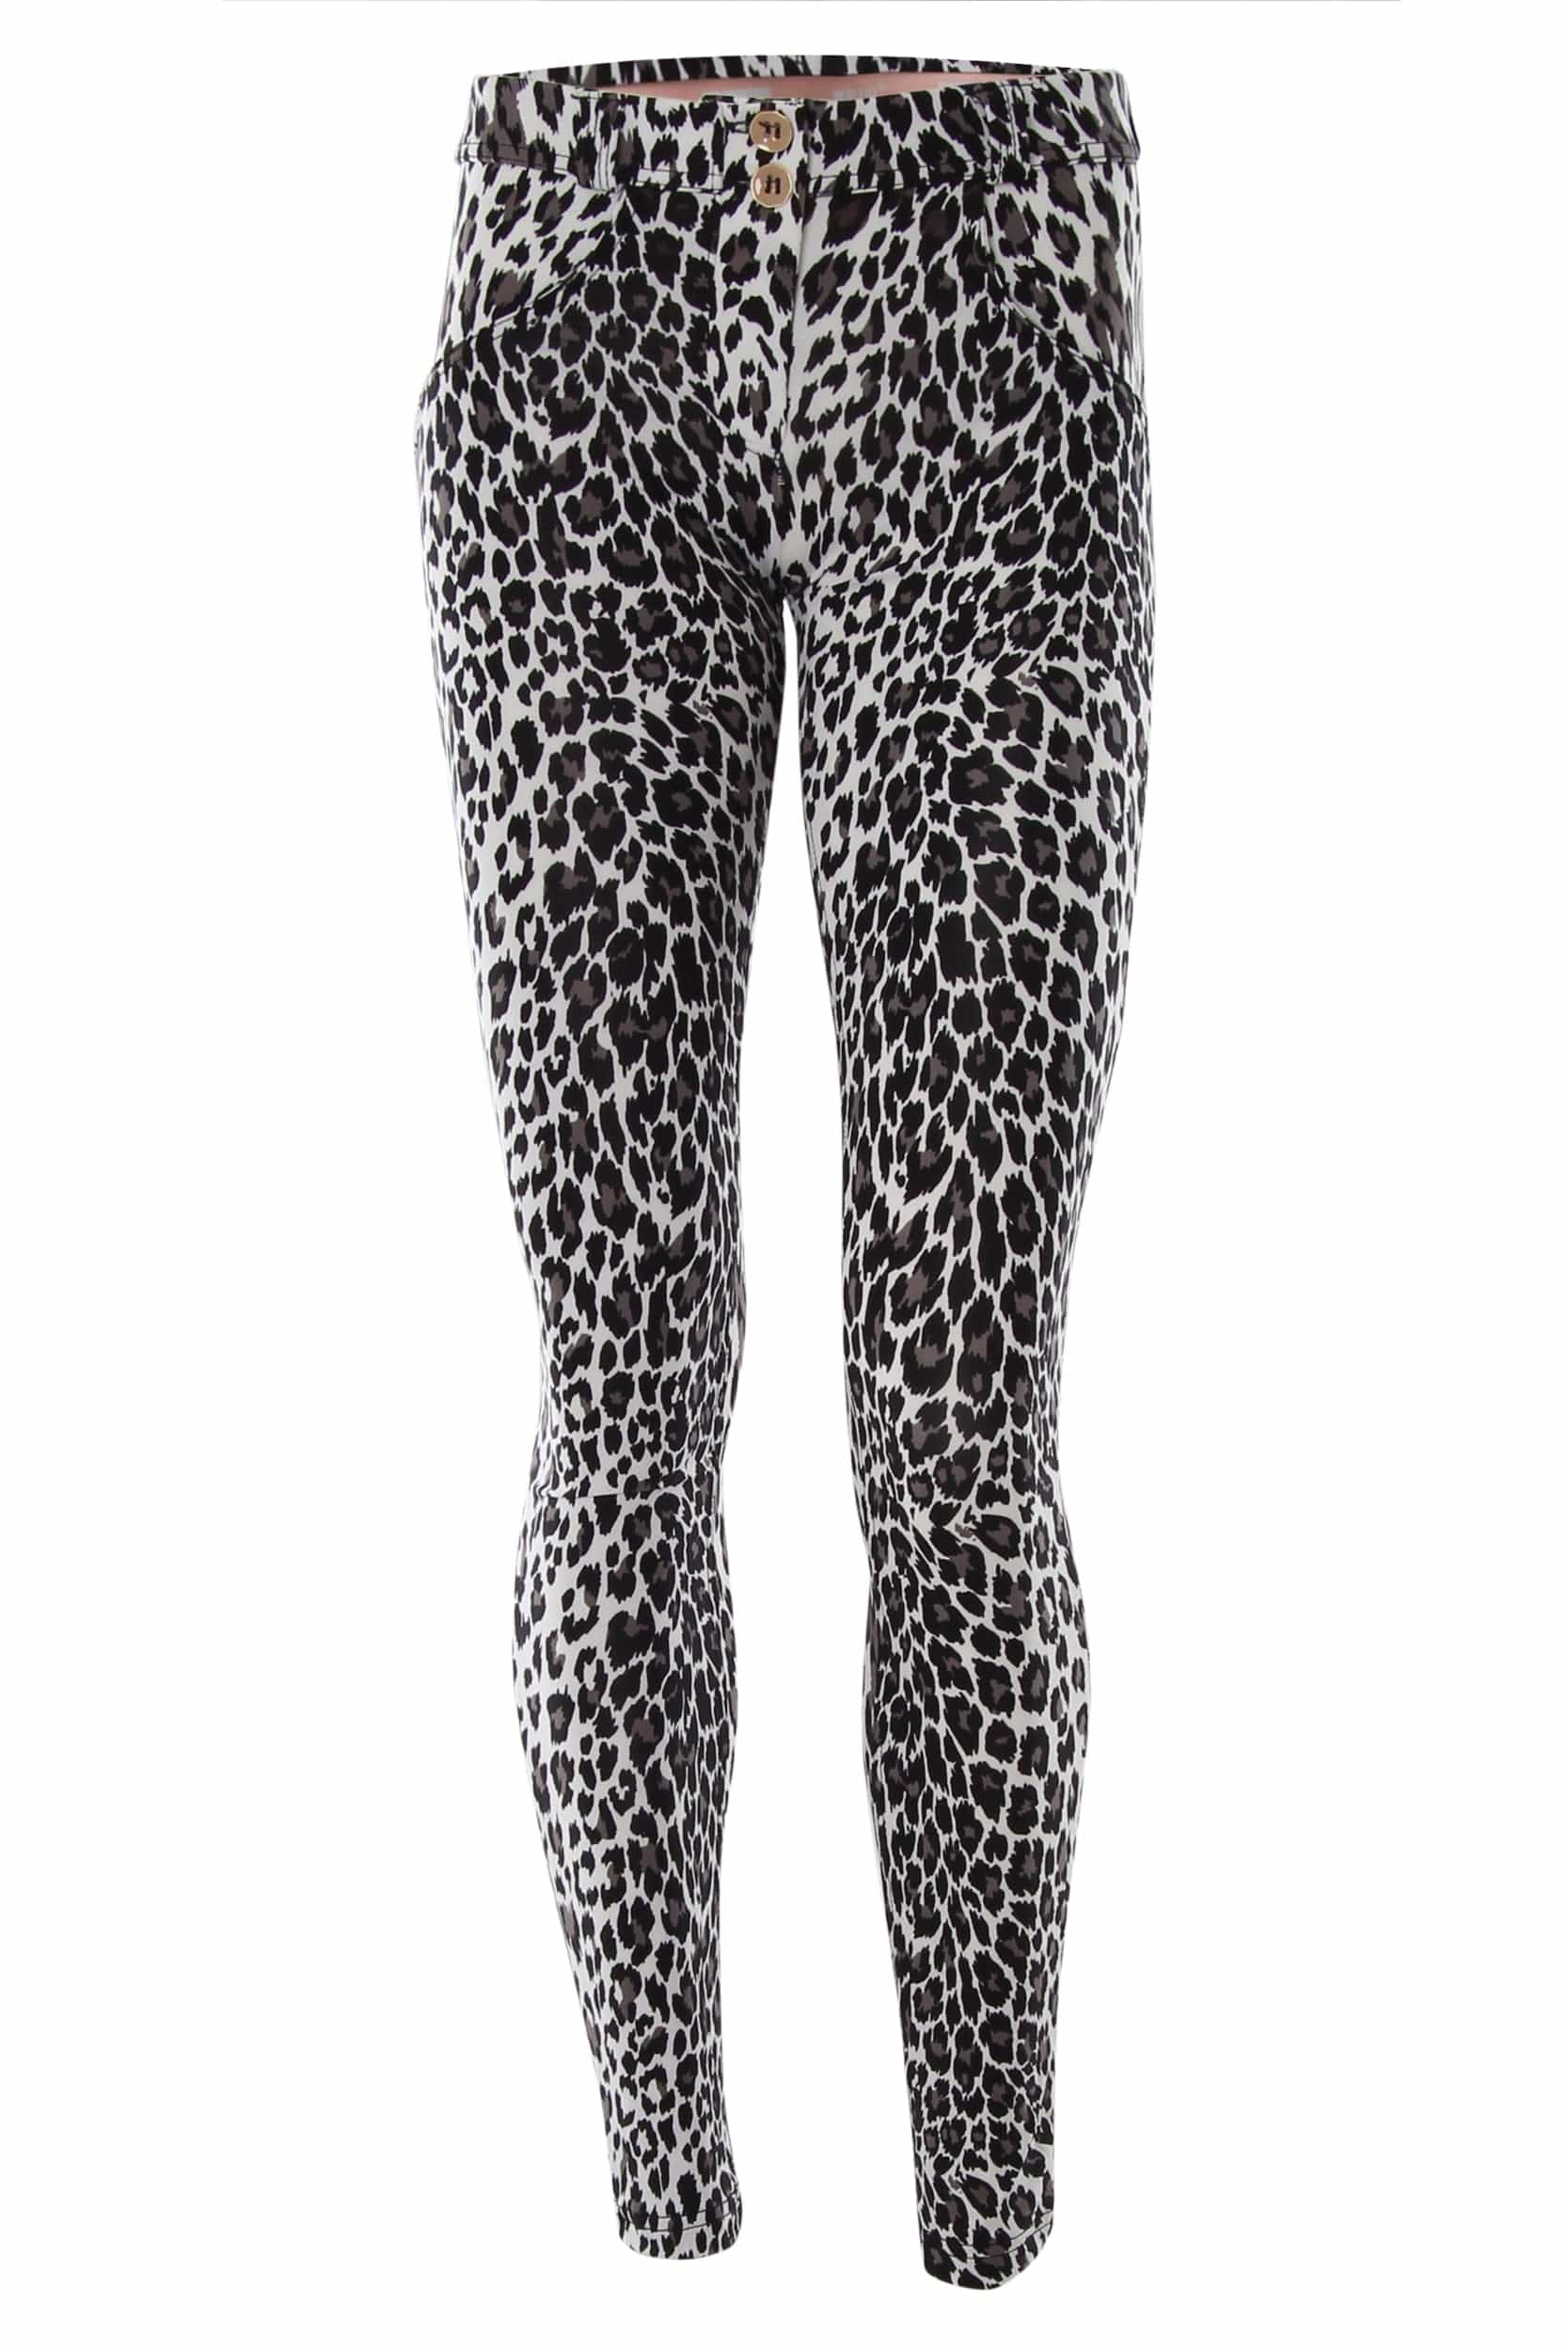 WR.UP® Diwo Skinny Leg - Regular Rise - Full Length - Leopard Animalier 2